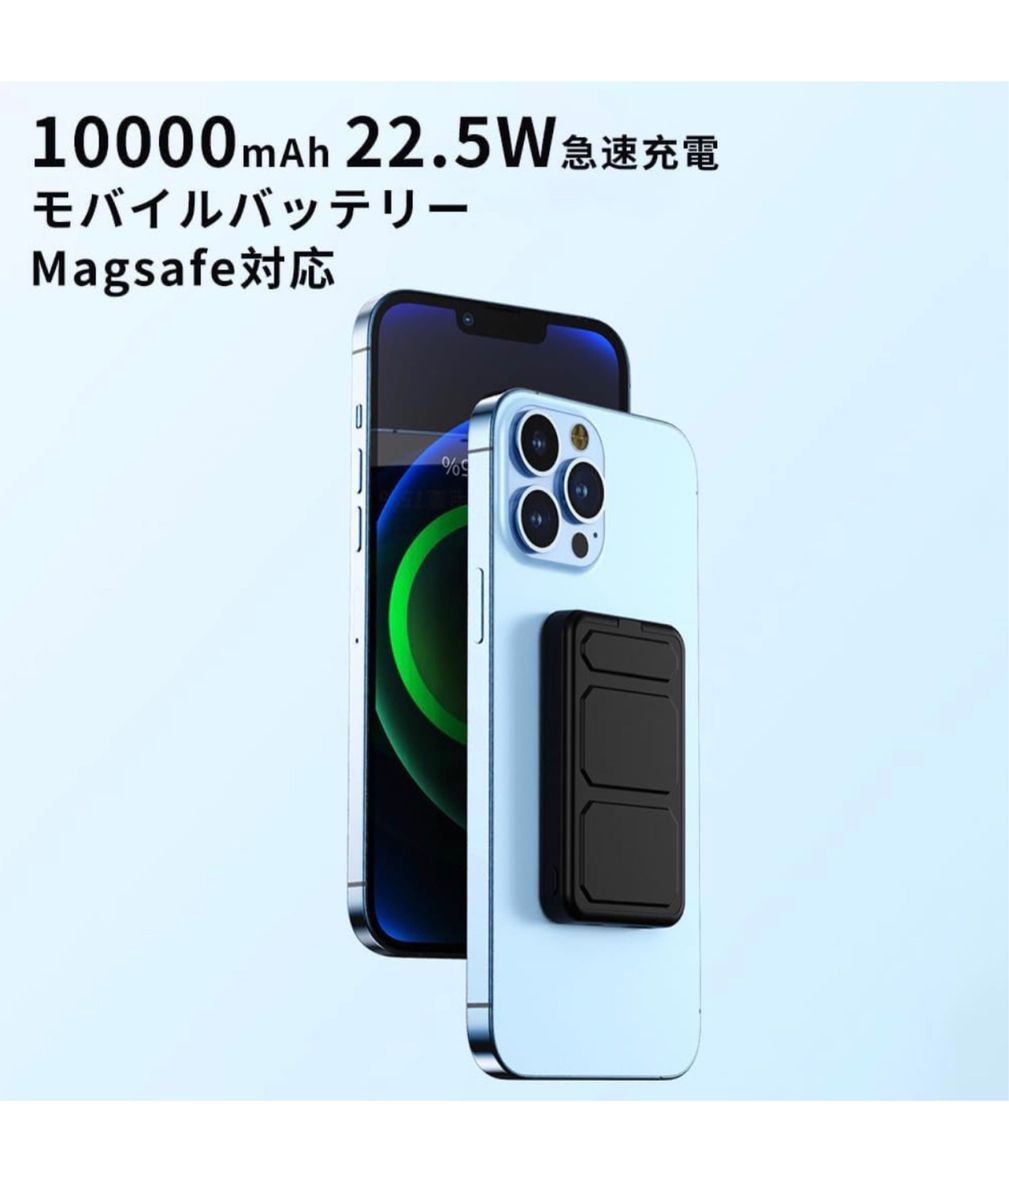 MagSafeモバイルバッテリー iphone 10000mAh 22.5W マグネット式 折り畳み式スタンド LCD残量表示